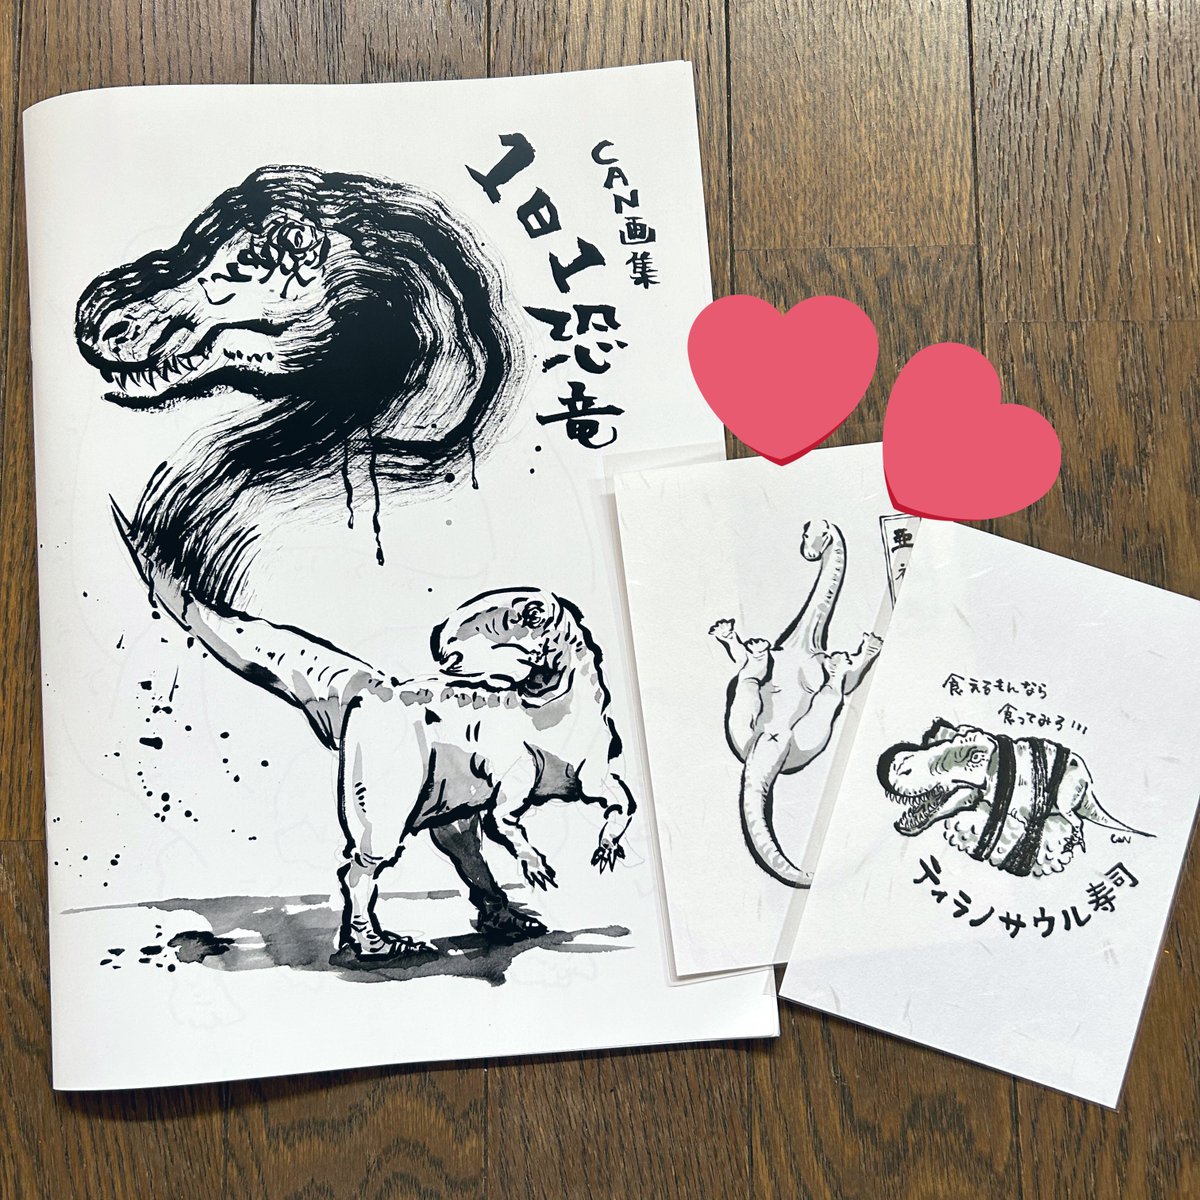 そしてCANさん(@dinocan2018 )の個展を見にカフェアトリエさんへもお邪魔してきました〜✨ きゃんさんの恐竜画にはかっこよさと可愛さと面白さが詰まってて…とても楽しめる展示でした!! 画集にサインもいただきましたぁぁ🥹🫶 大切にします💕